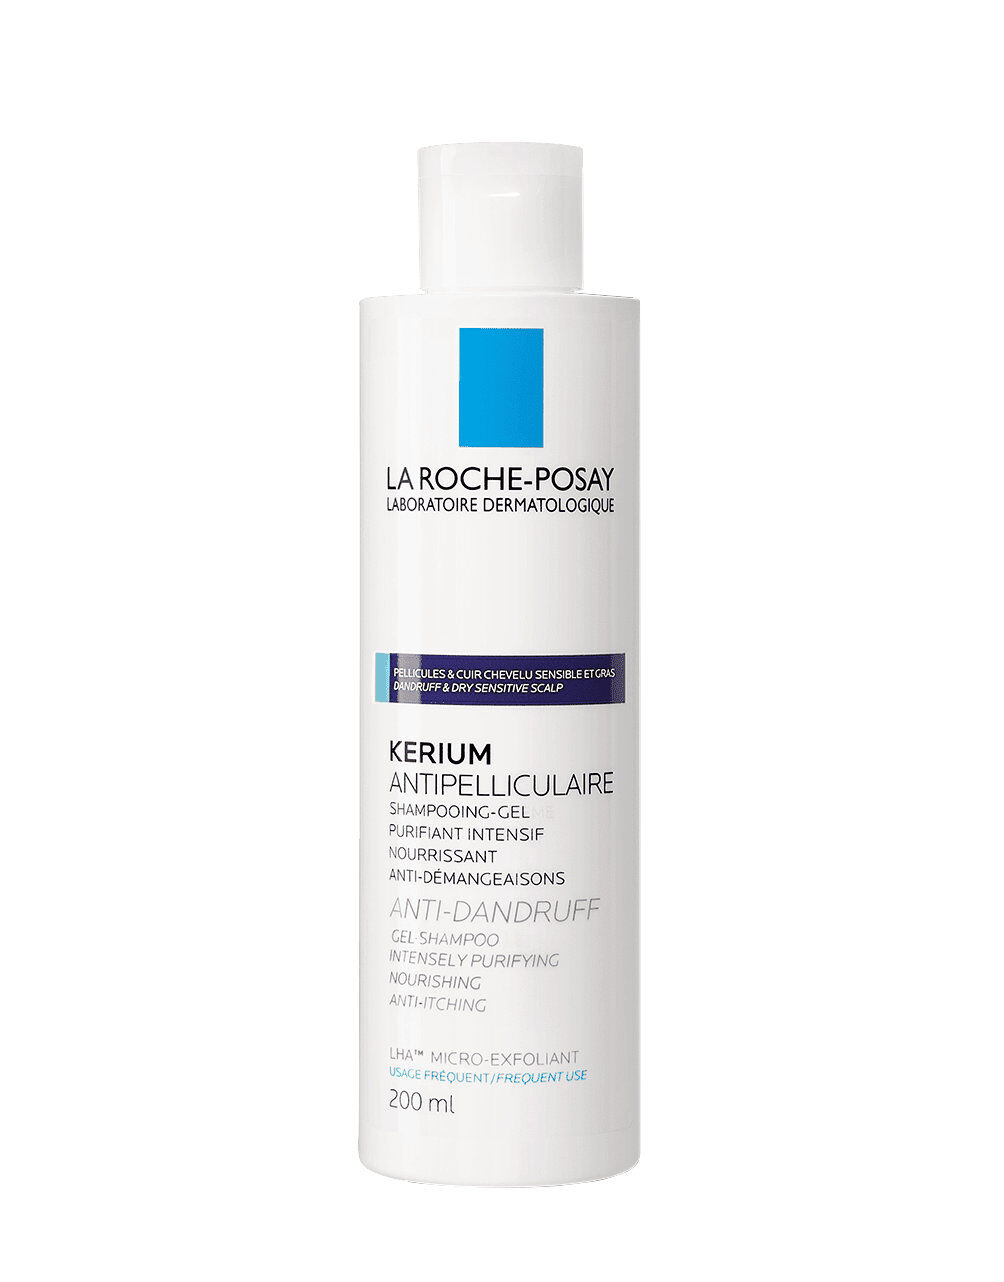 LA ROCHE-POSAY Kerium - Anti-Forfora Shampoo-Crema Cuio Capelluto Sensibile E Secco 200 Ml